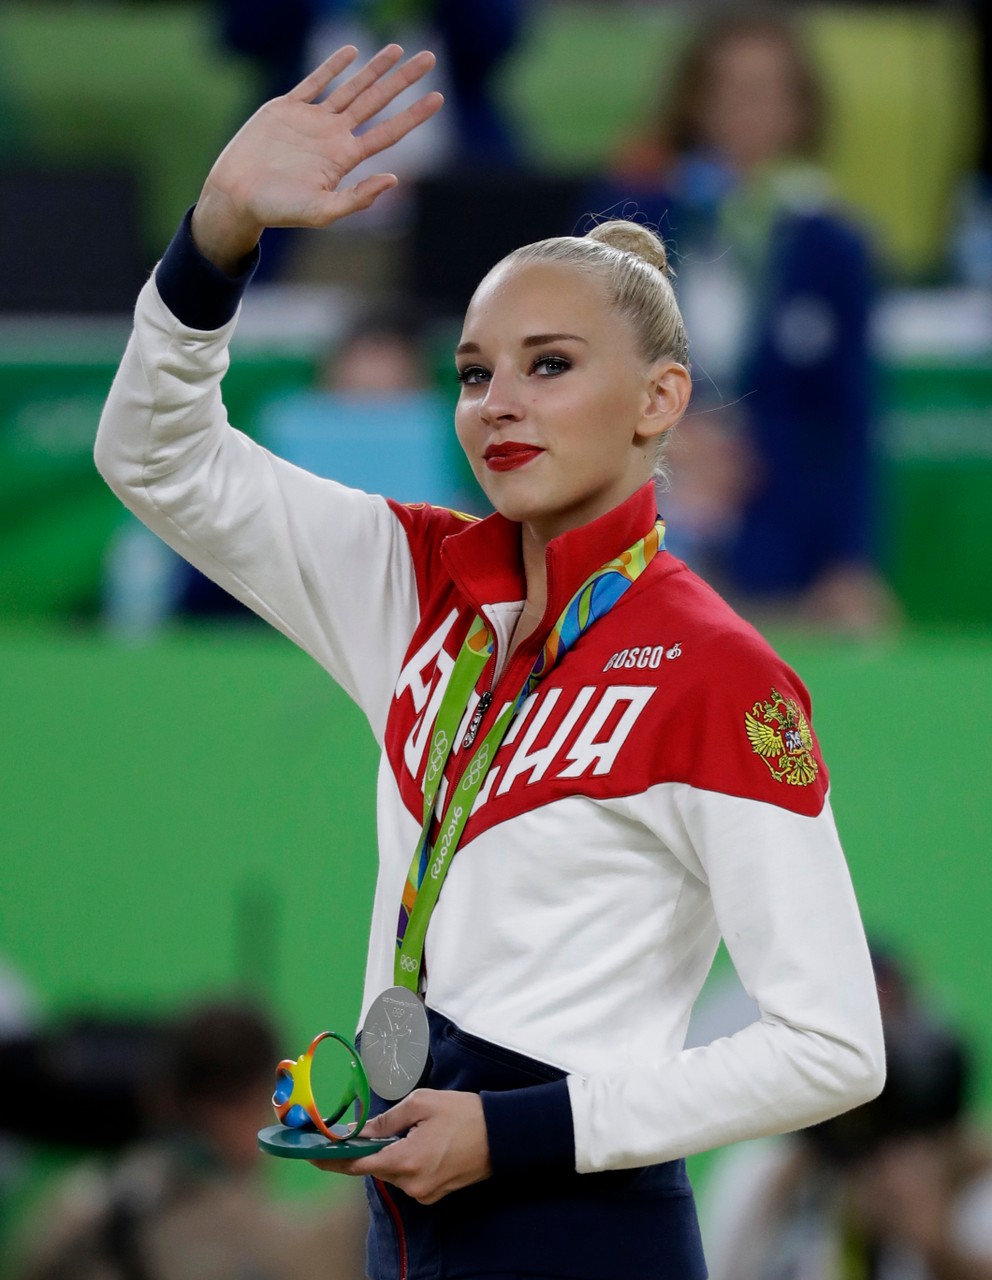 V histórii modernej gymnastiky ju porovnávajú s jej krajankami a hviezdami tohto športu z minulosti Alinou Kabajevovou a Jevgenijou Kanajevovou.